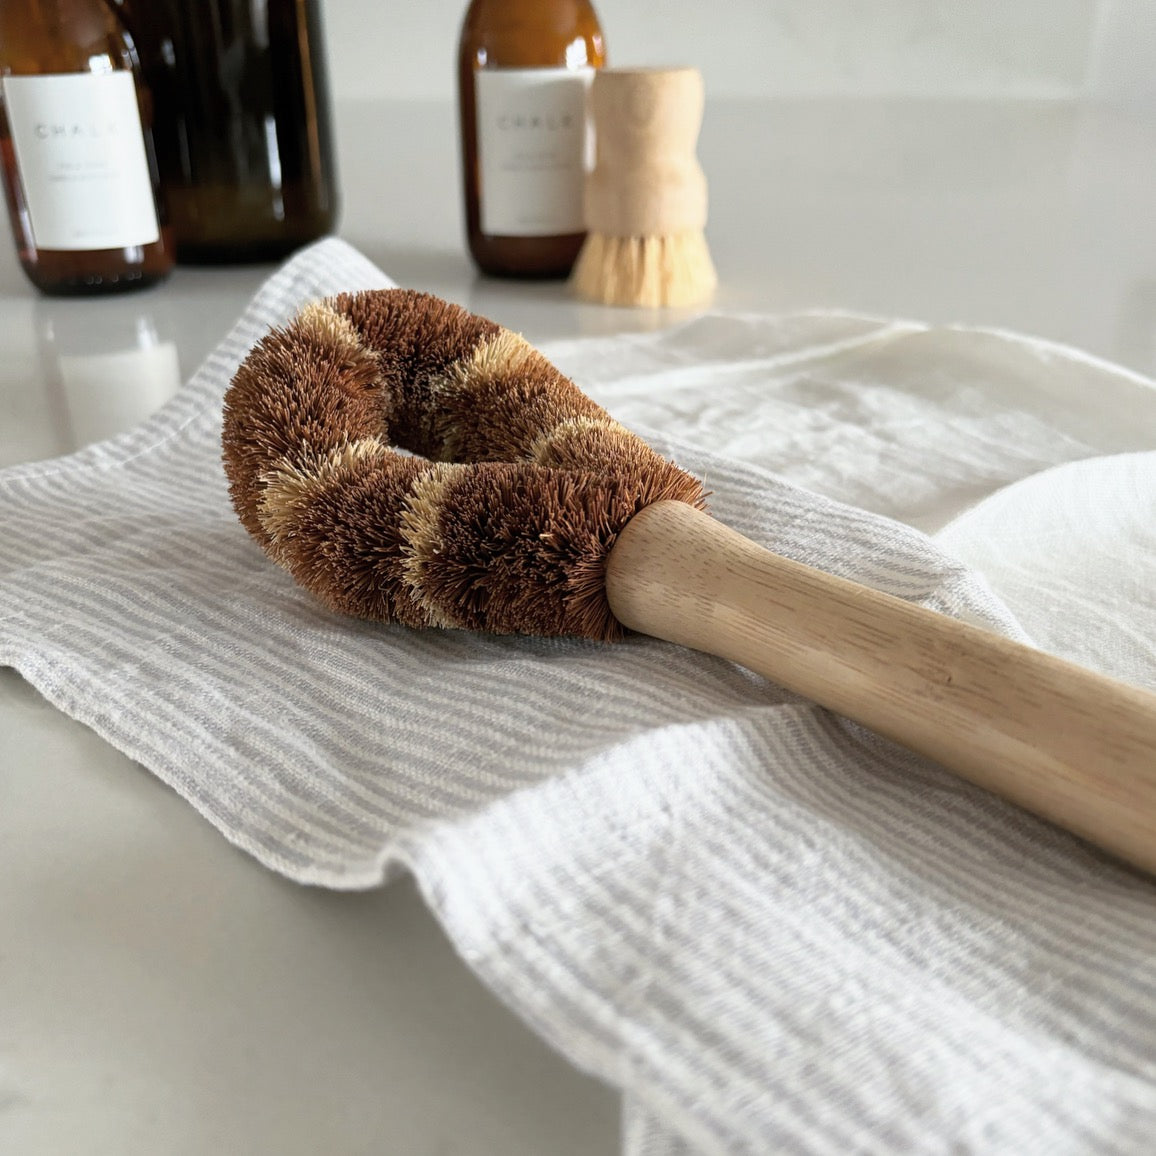 Wooden Kitchen Brush